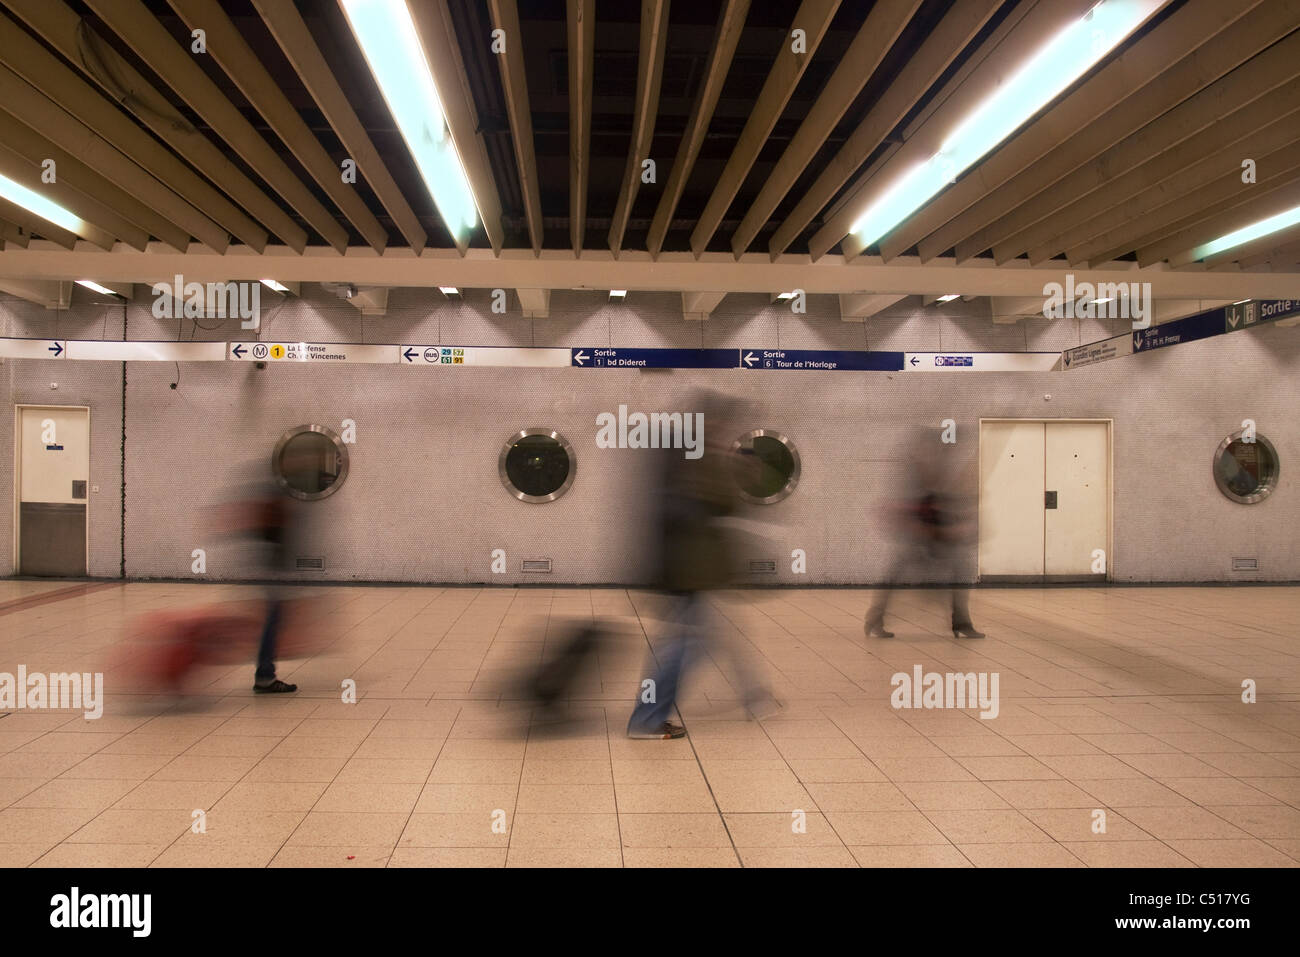 People walking in Paris metro station Stock Photo